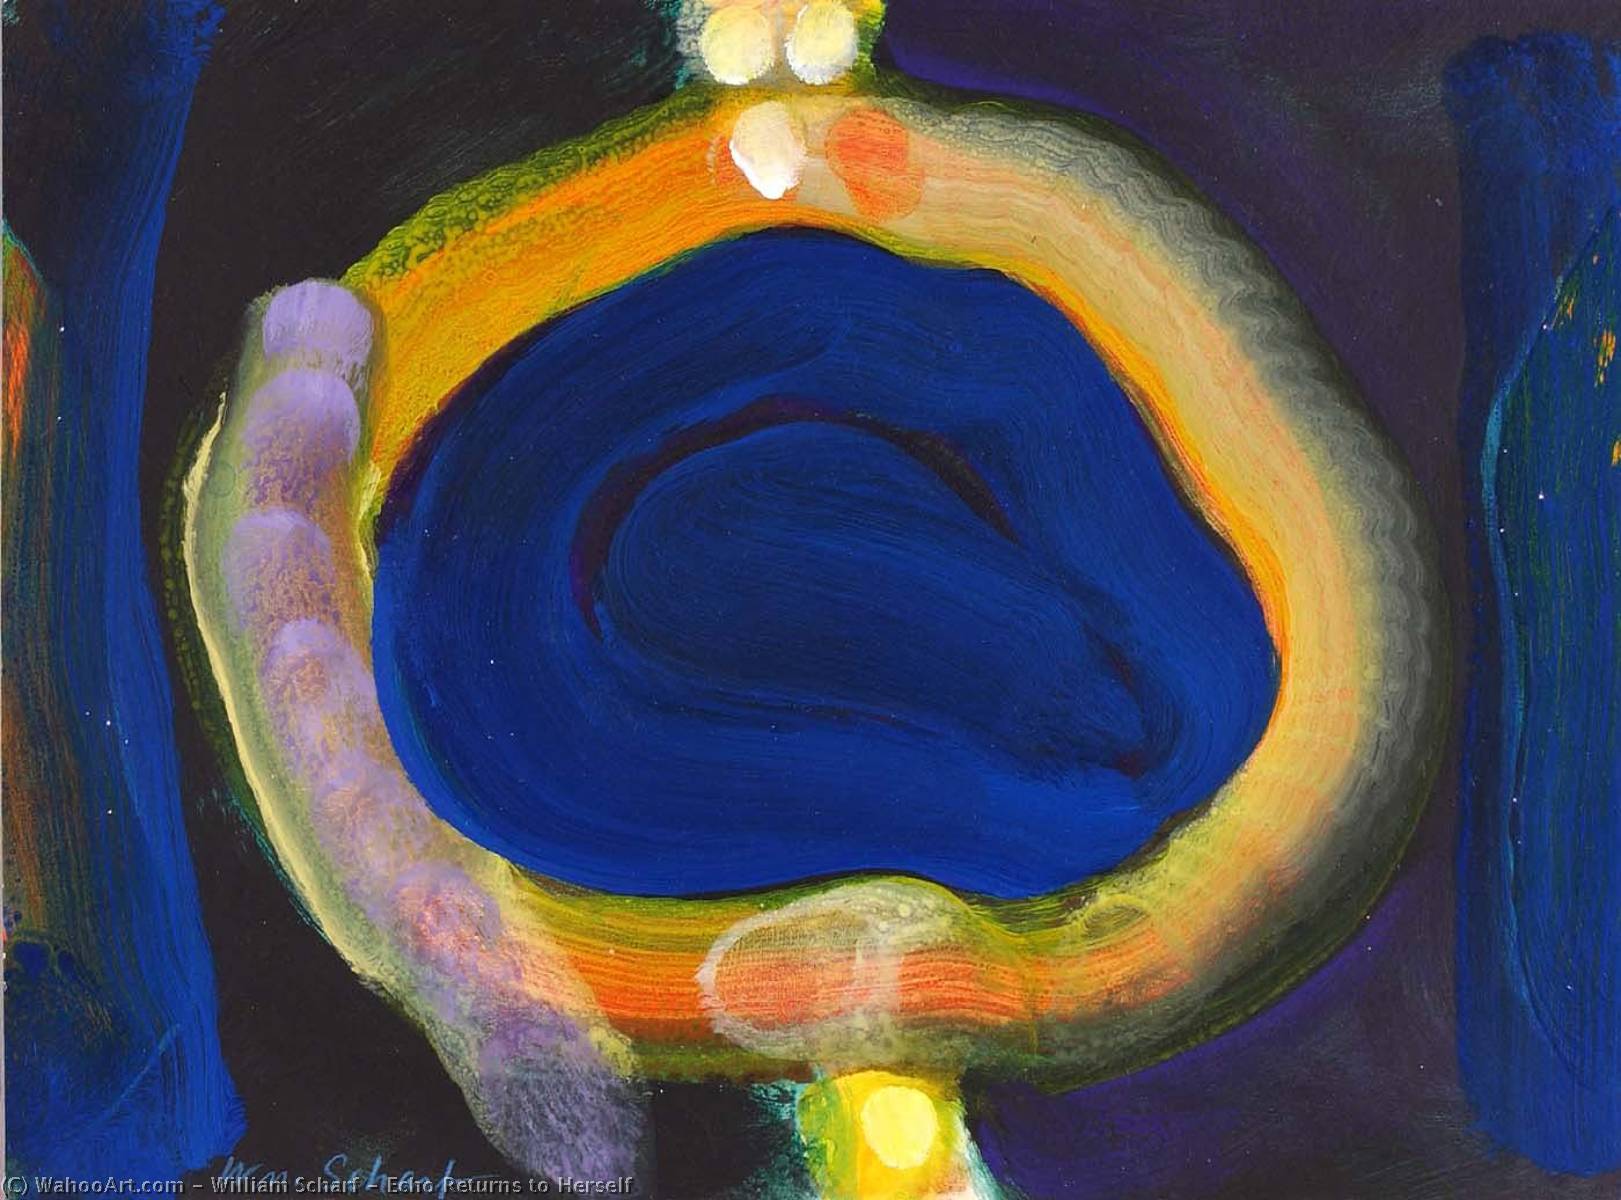 Echo Returns to Herself, 1983 by William Scharf (1927-2018) William Scharf | ArtsDot.com